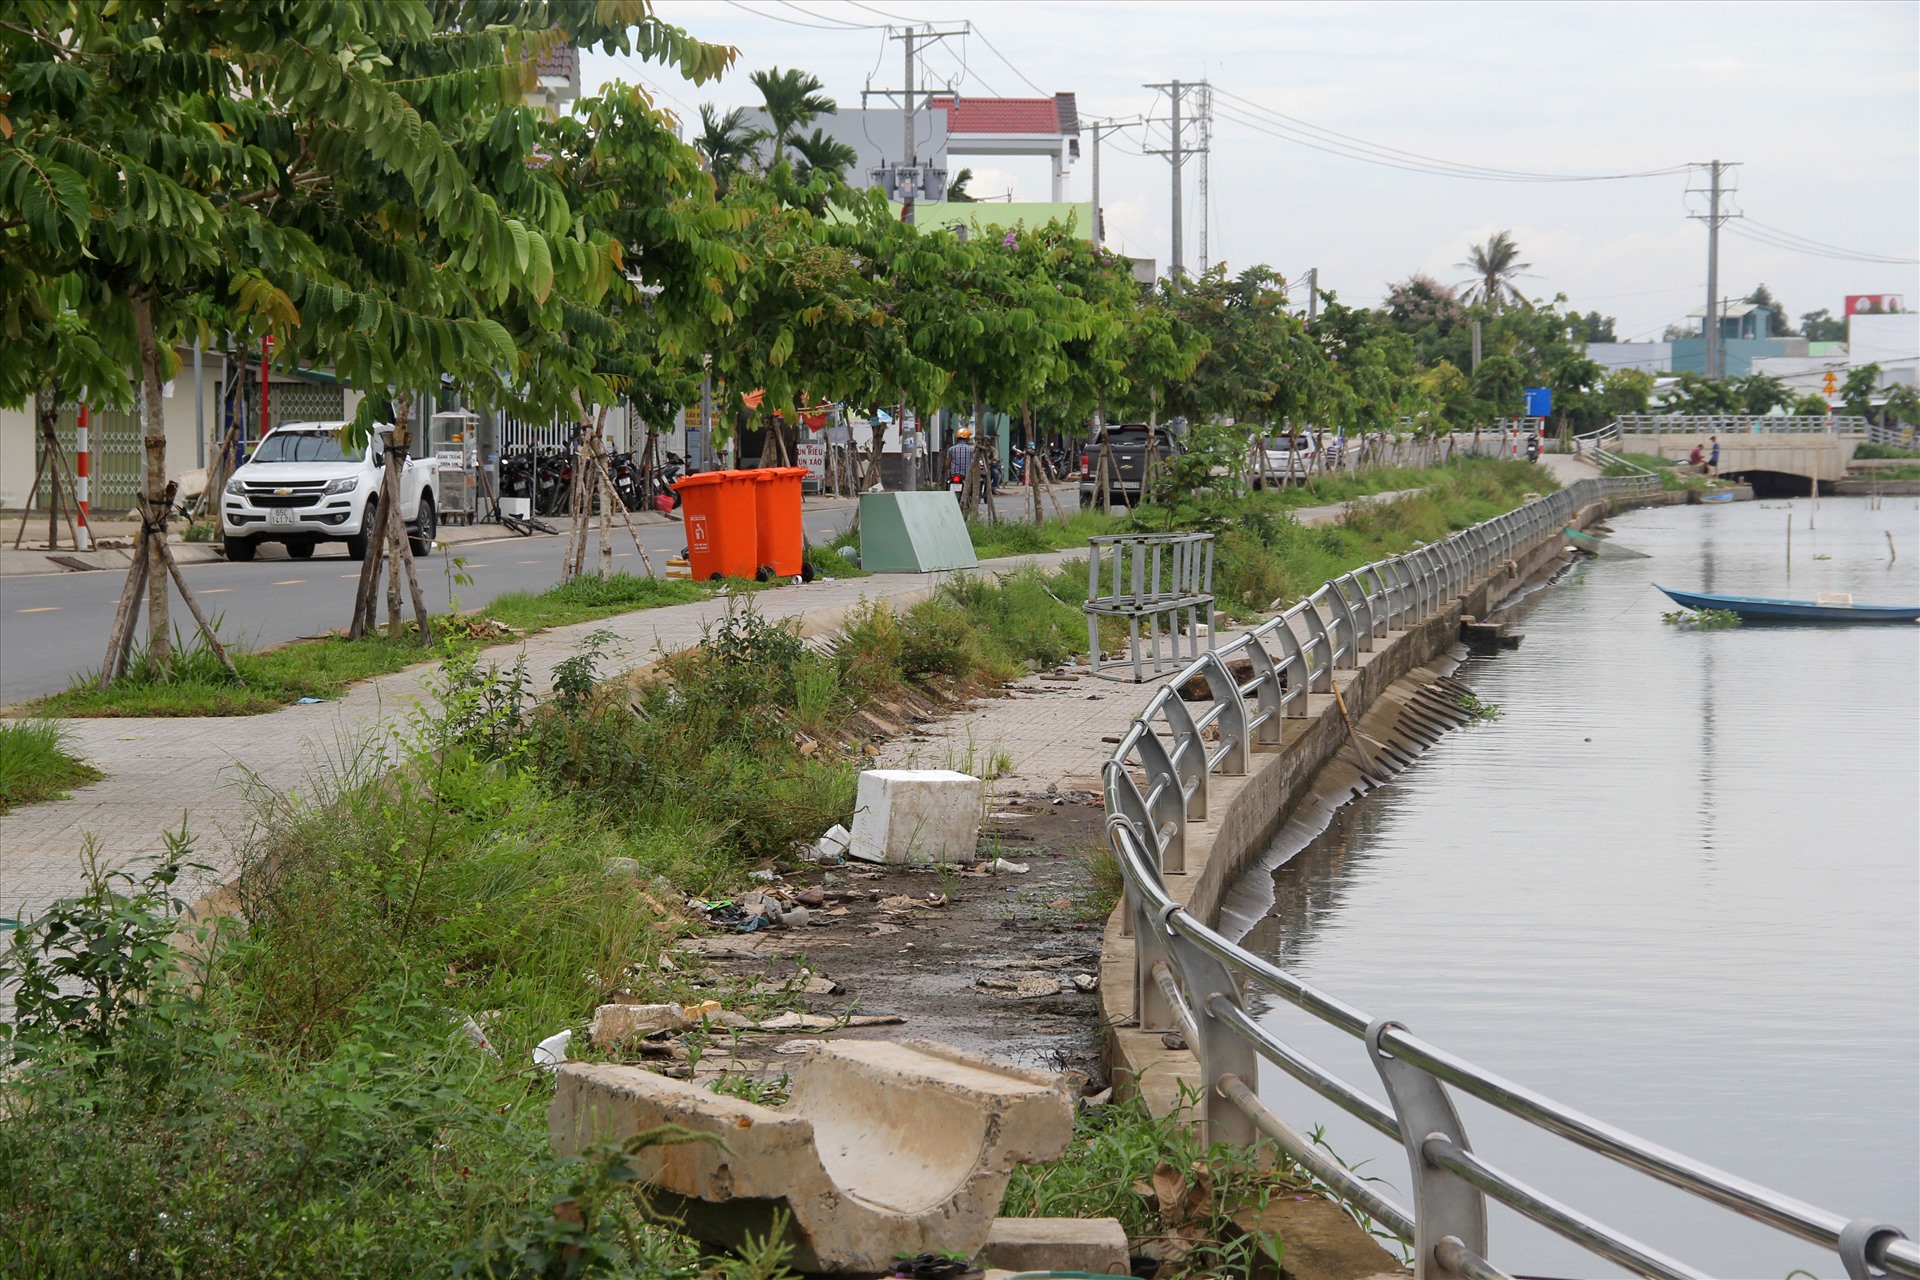 Công trình hồ Bún Xáng thuộc dự án Nâng cấp đô thị vùng Đồng bằng sông Cửu Long – Tiểu dự án thành phố Cần Thơ (Dự án 2) sử dụng nguồn vốn tín dụng ưu đãi của Ngân hàng Thế giới (WB) có tổng vốn 90,4 triệu USD (tương đương 1.850 tỉ đồng).